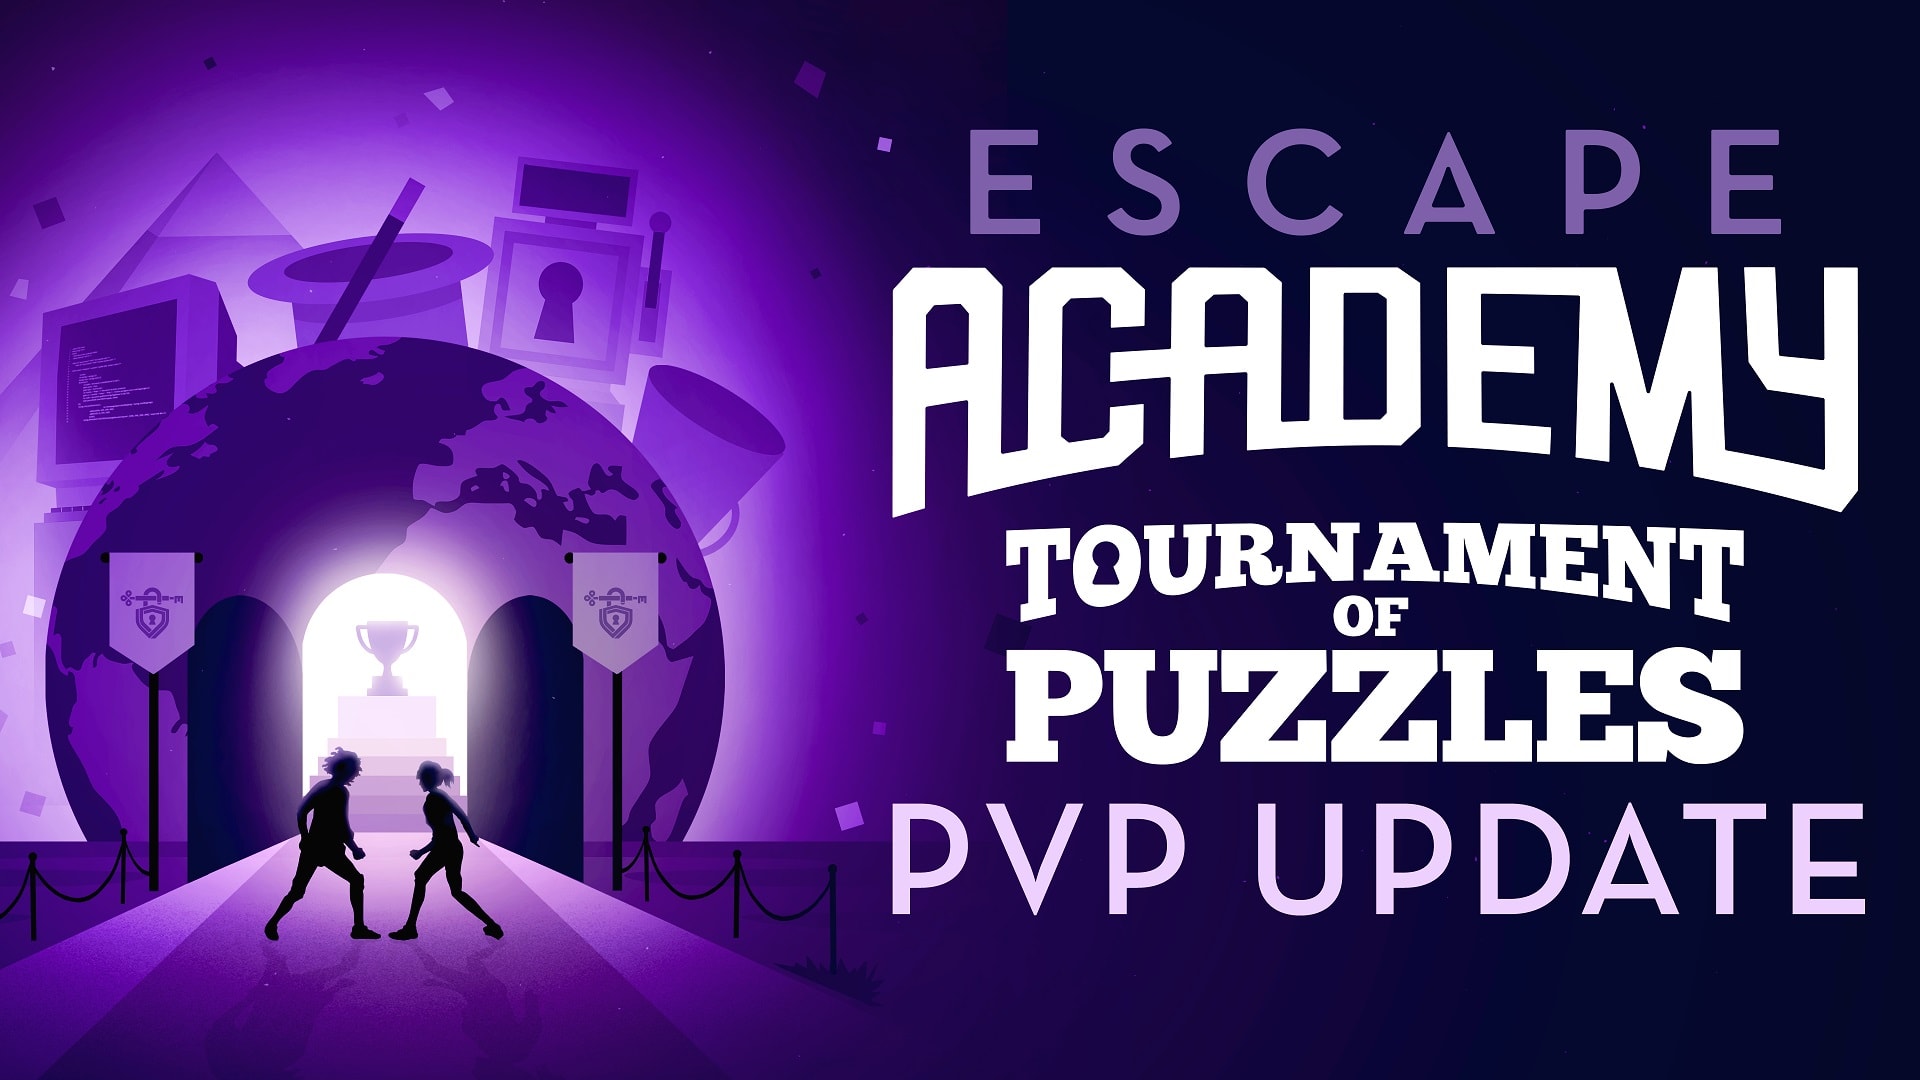 Escape Academy : Édition complète